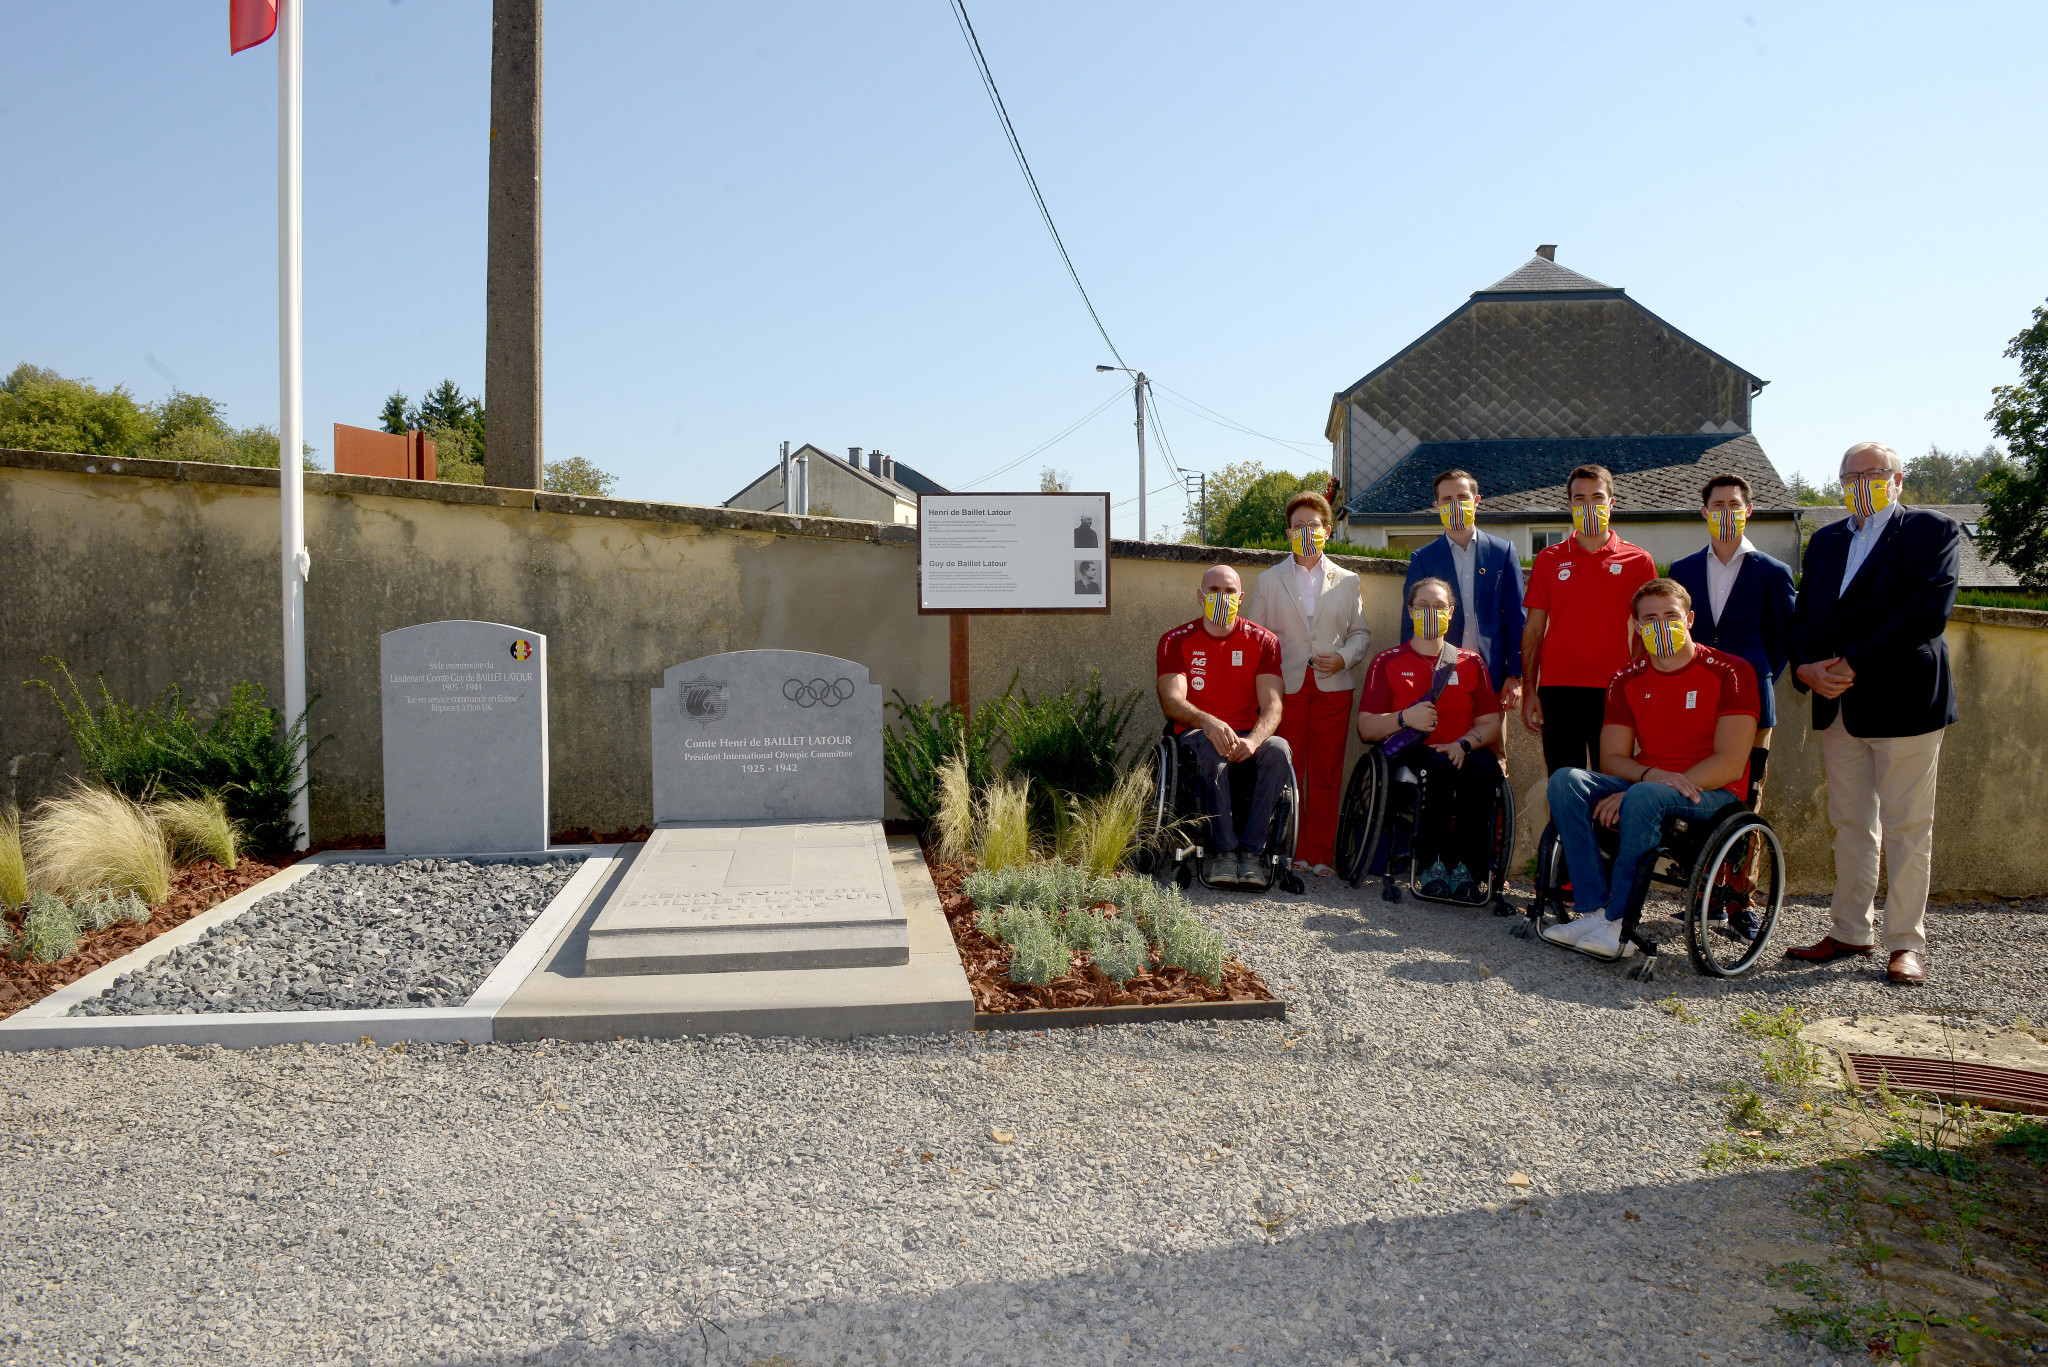 The delegation's tour included visiting the grave of Henri de Baillet Latour ©BPC